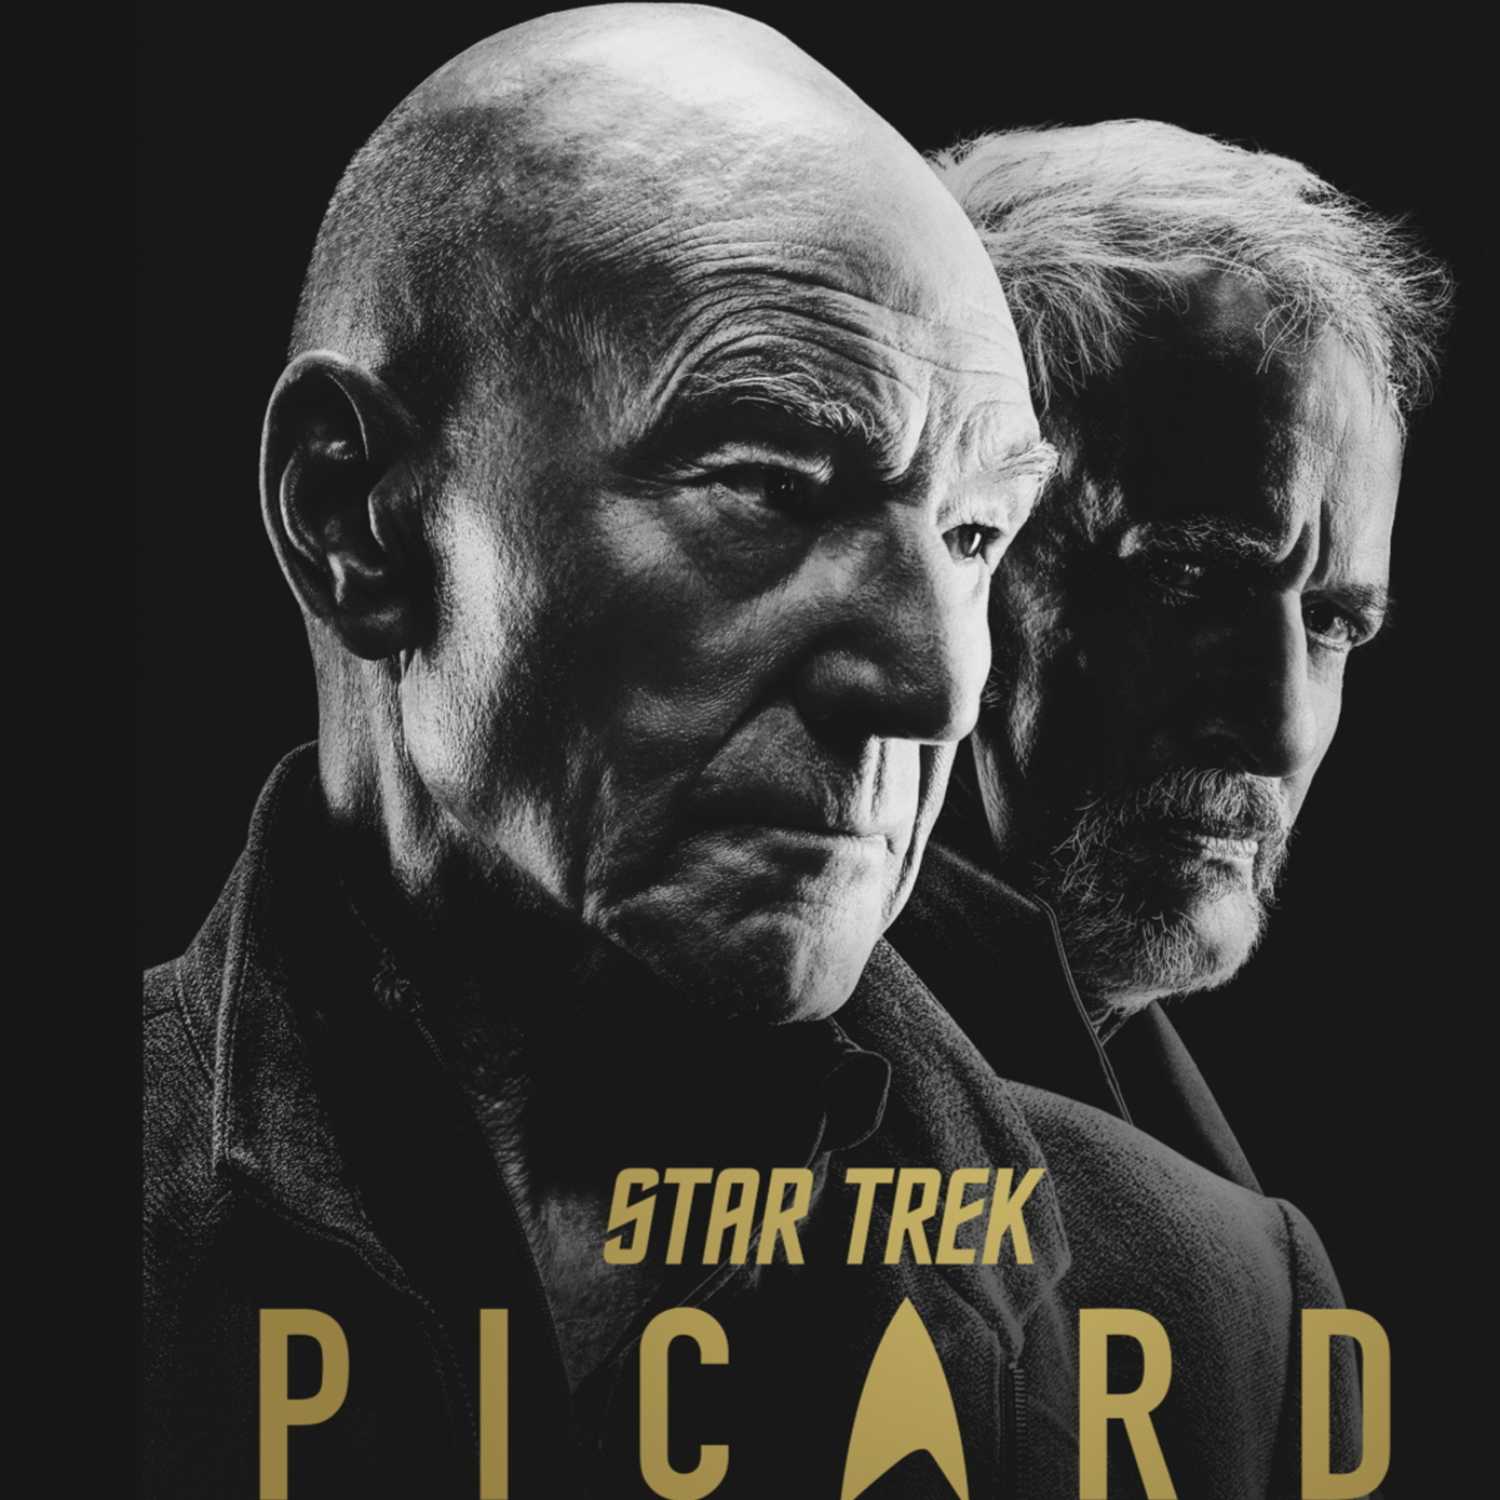 Bonus Episode: Star Trek Picard S2E3